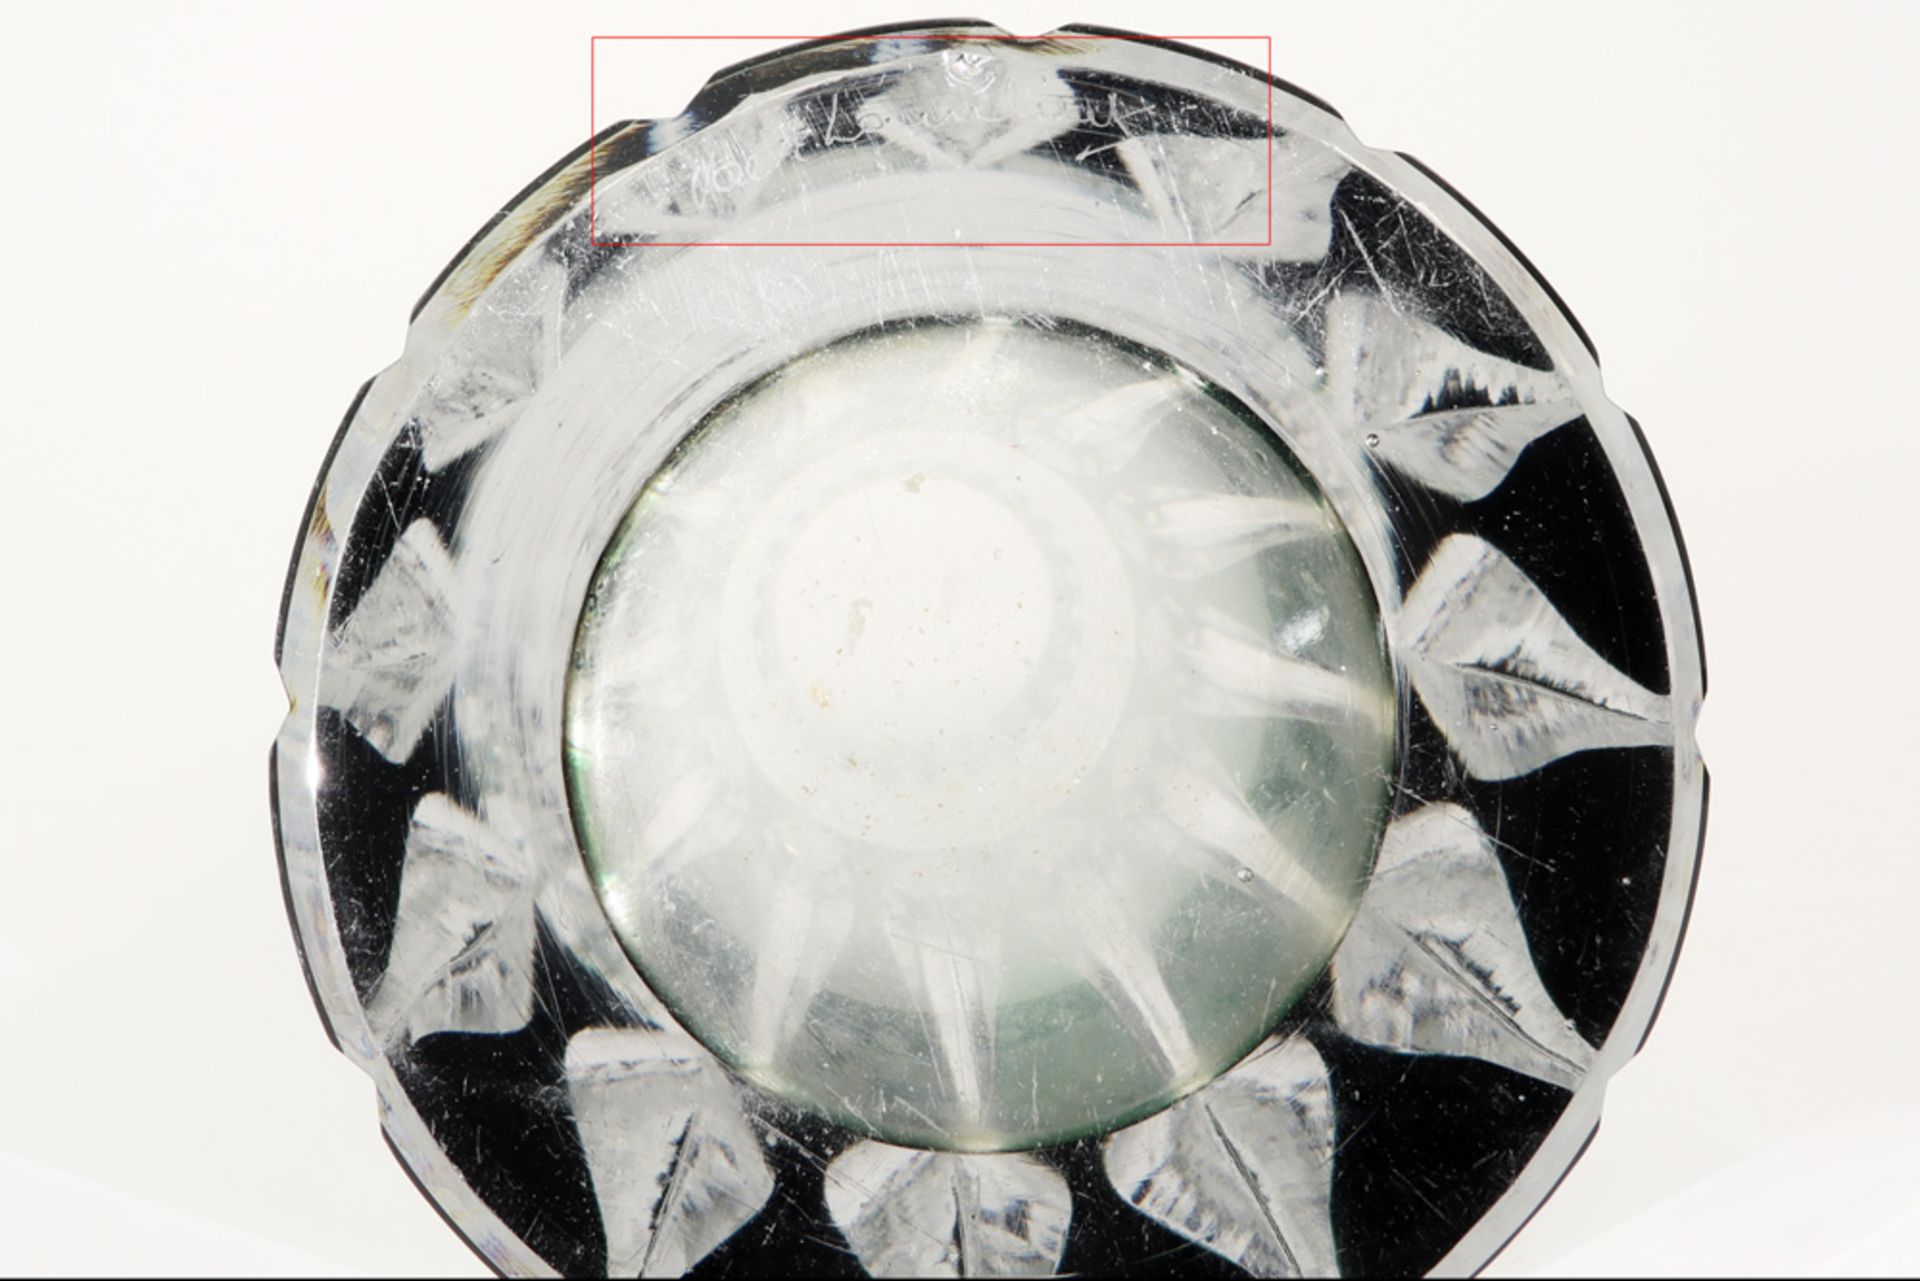 Belgian vase in VSL crystal ||Vaas met model "Altena" in kristal Val-St-Lambert - hoogte : 27,2 cm - Image 3 of 3